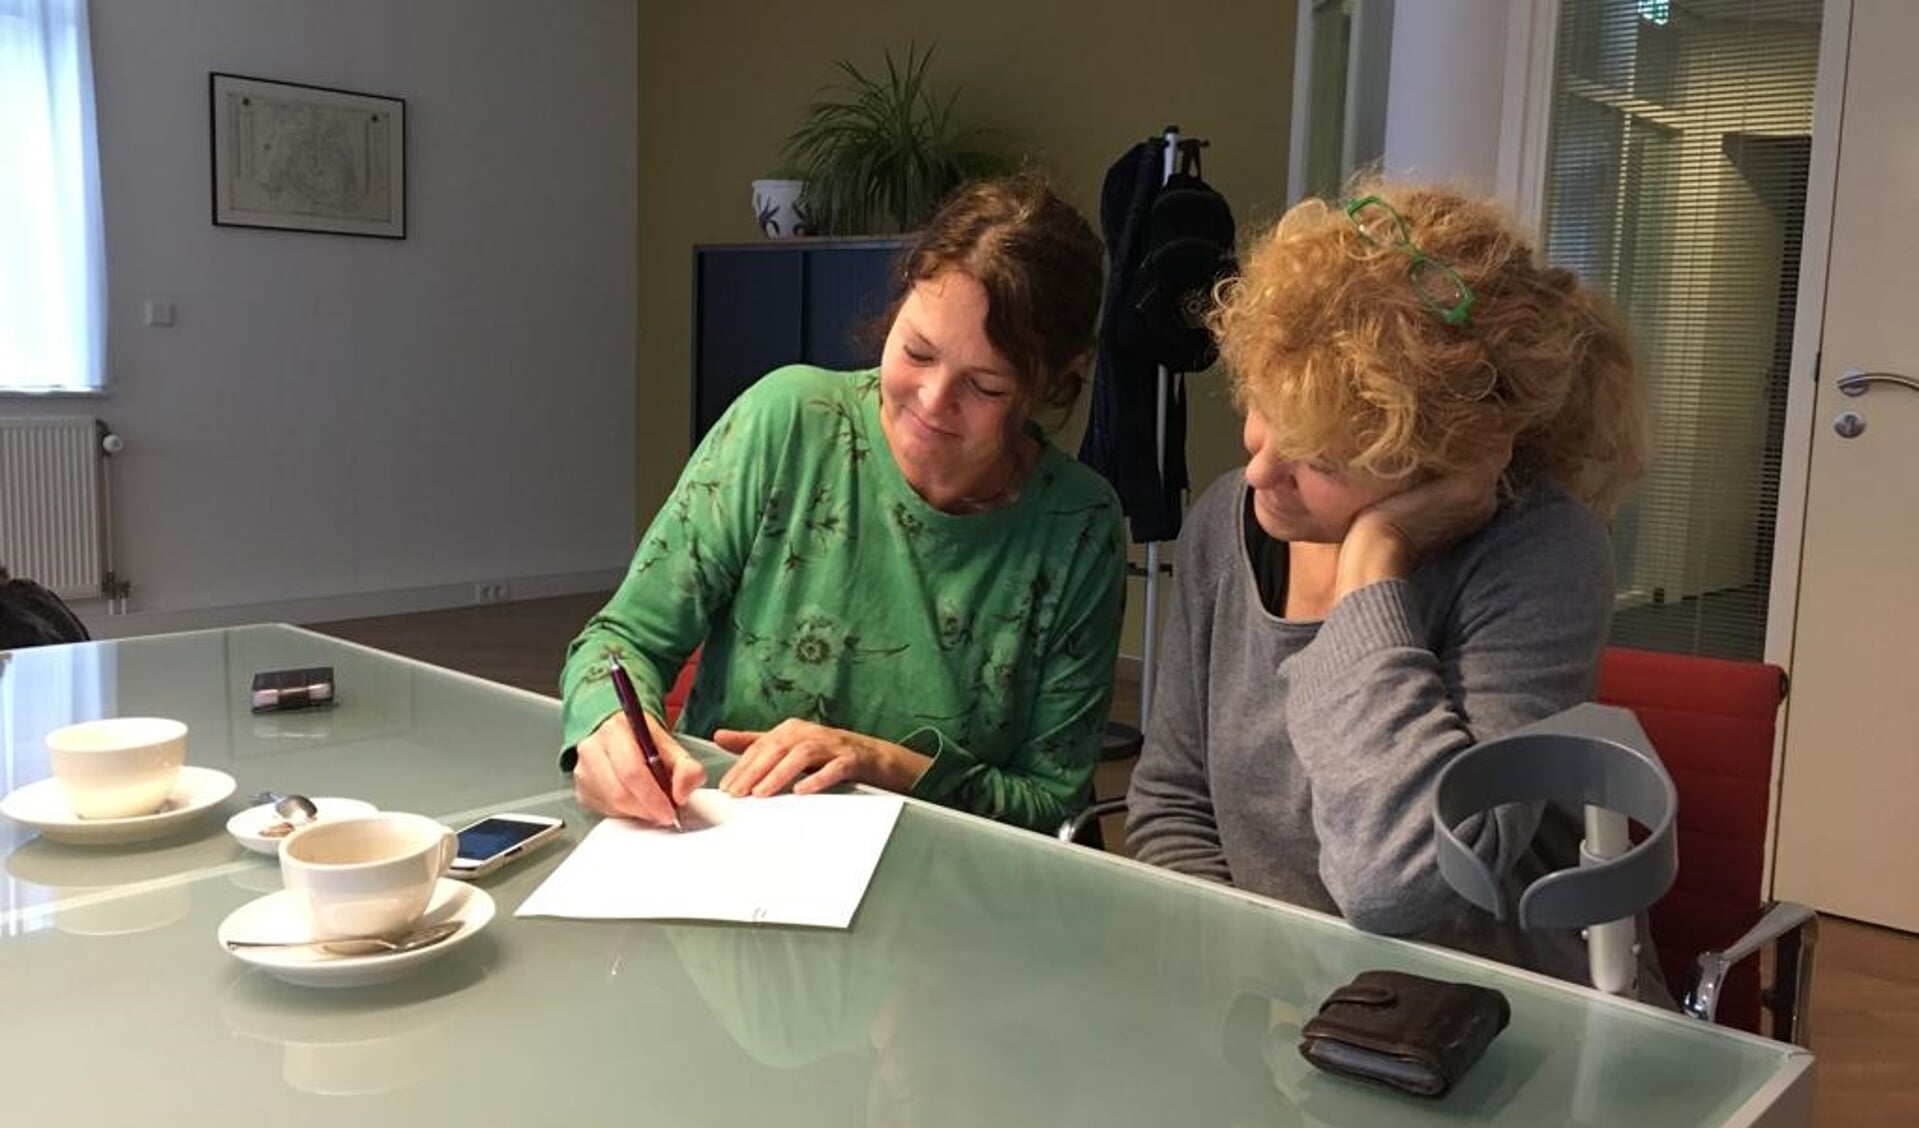 Sjakkelien Klaassen en Pieternel Geurtz ondertekenen de stichtingsakte bij de notaris.

